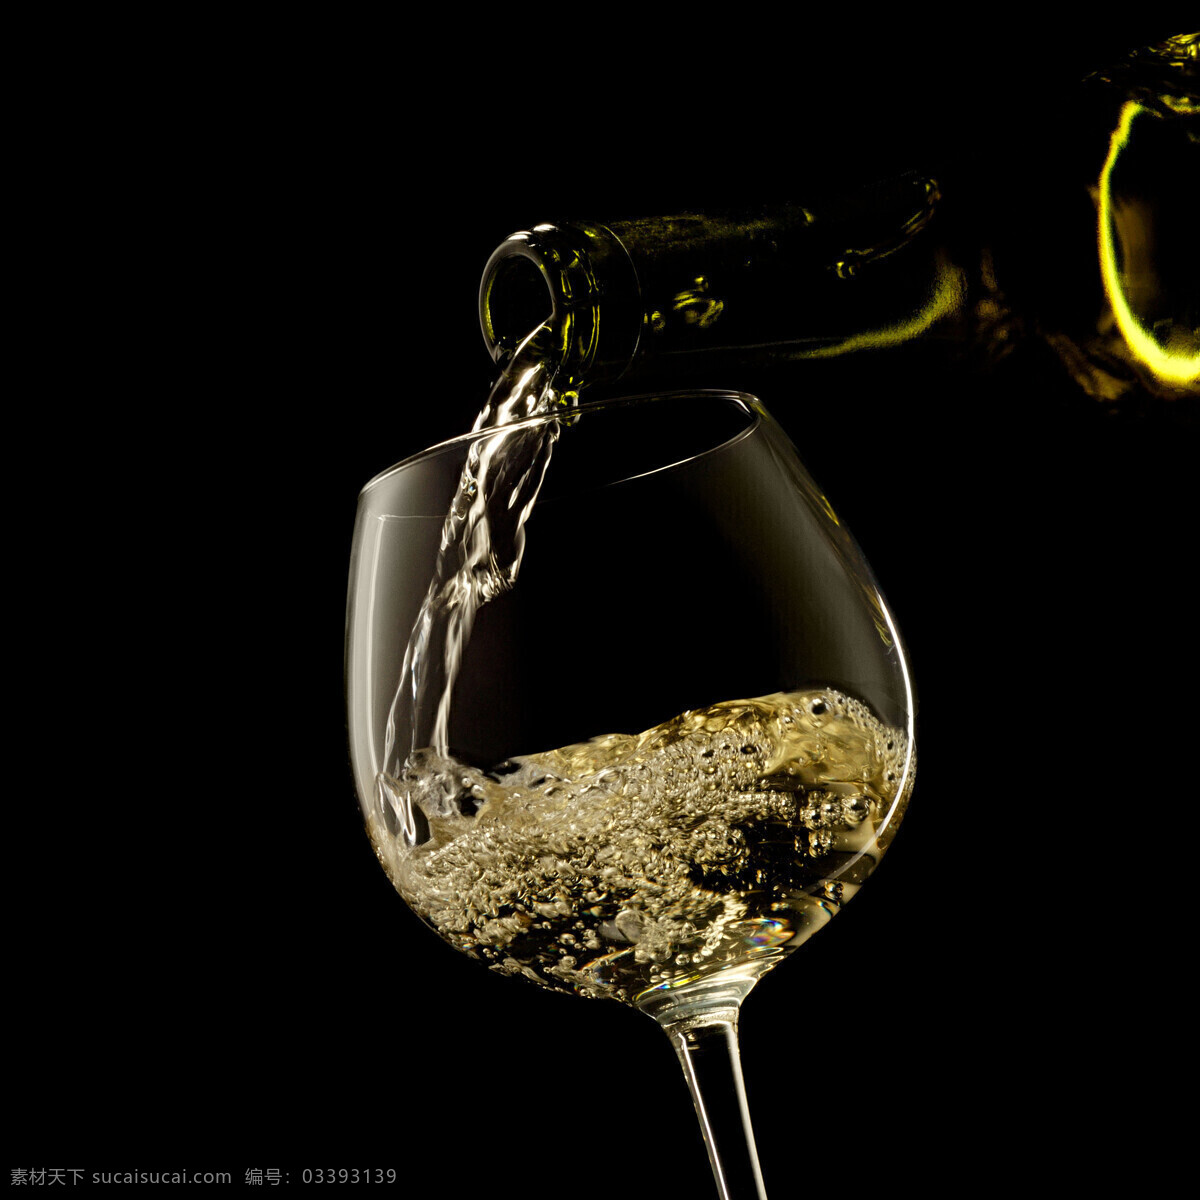 葡萄 美酒 红酒 饮品 葡萄酒 酒瓶 酒杯 高脚杯 玻璃杯 酒类图片 餐饮美食